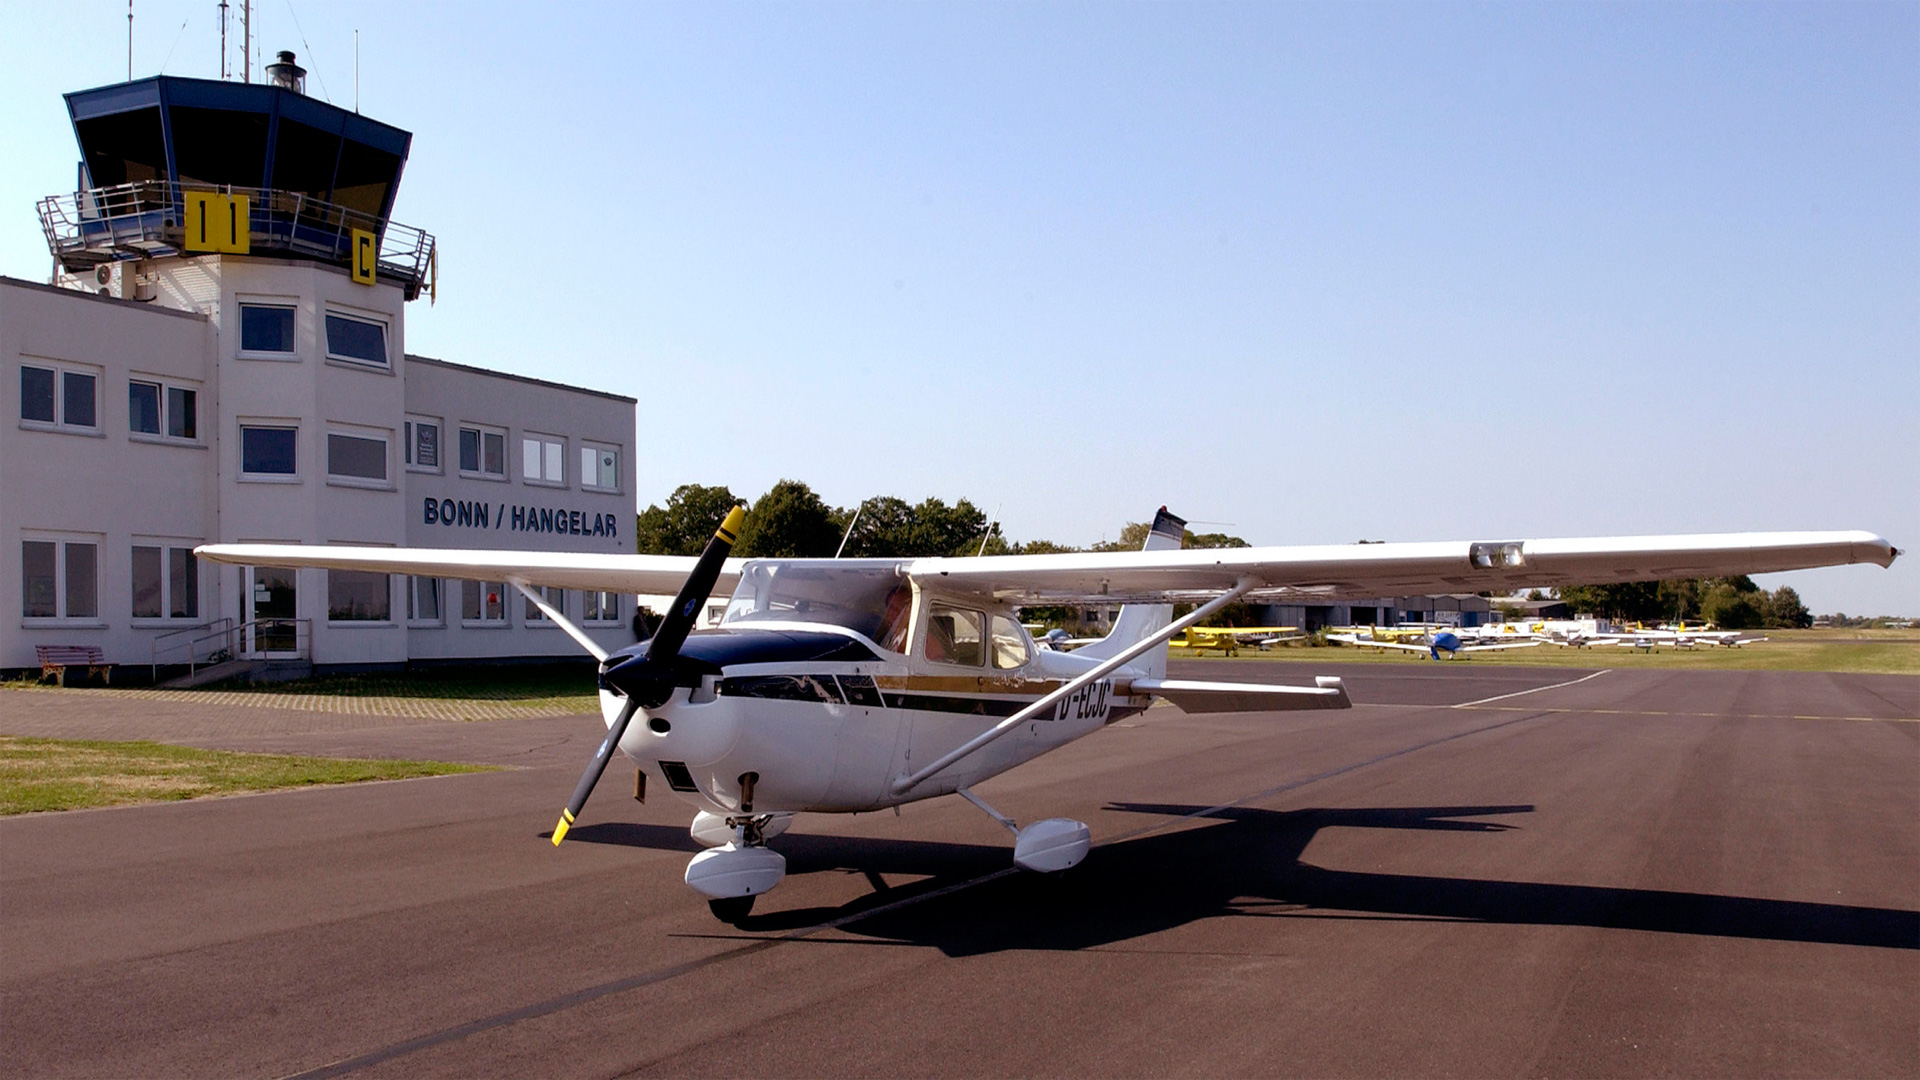 Cessna 172 (D-ECJC) am Flugplatz Bonn/Hangelar